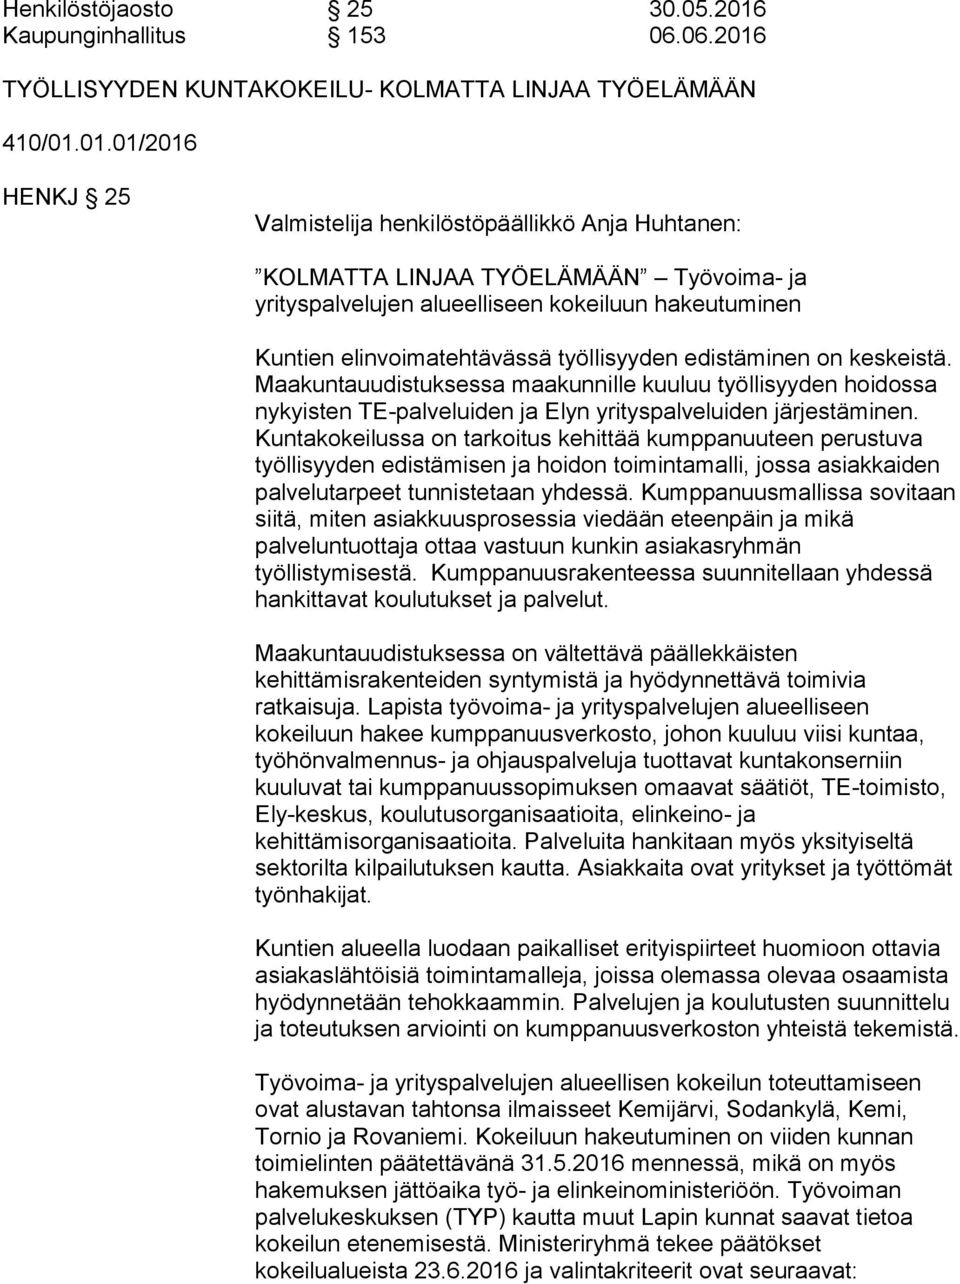 TYÖLLISYYDEN KUNTAKOKEILU- KOLMATTA LINJAA TYÖELÄMÄÄN 410/01.